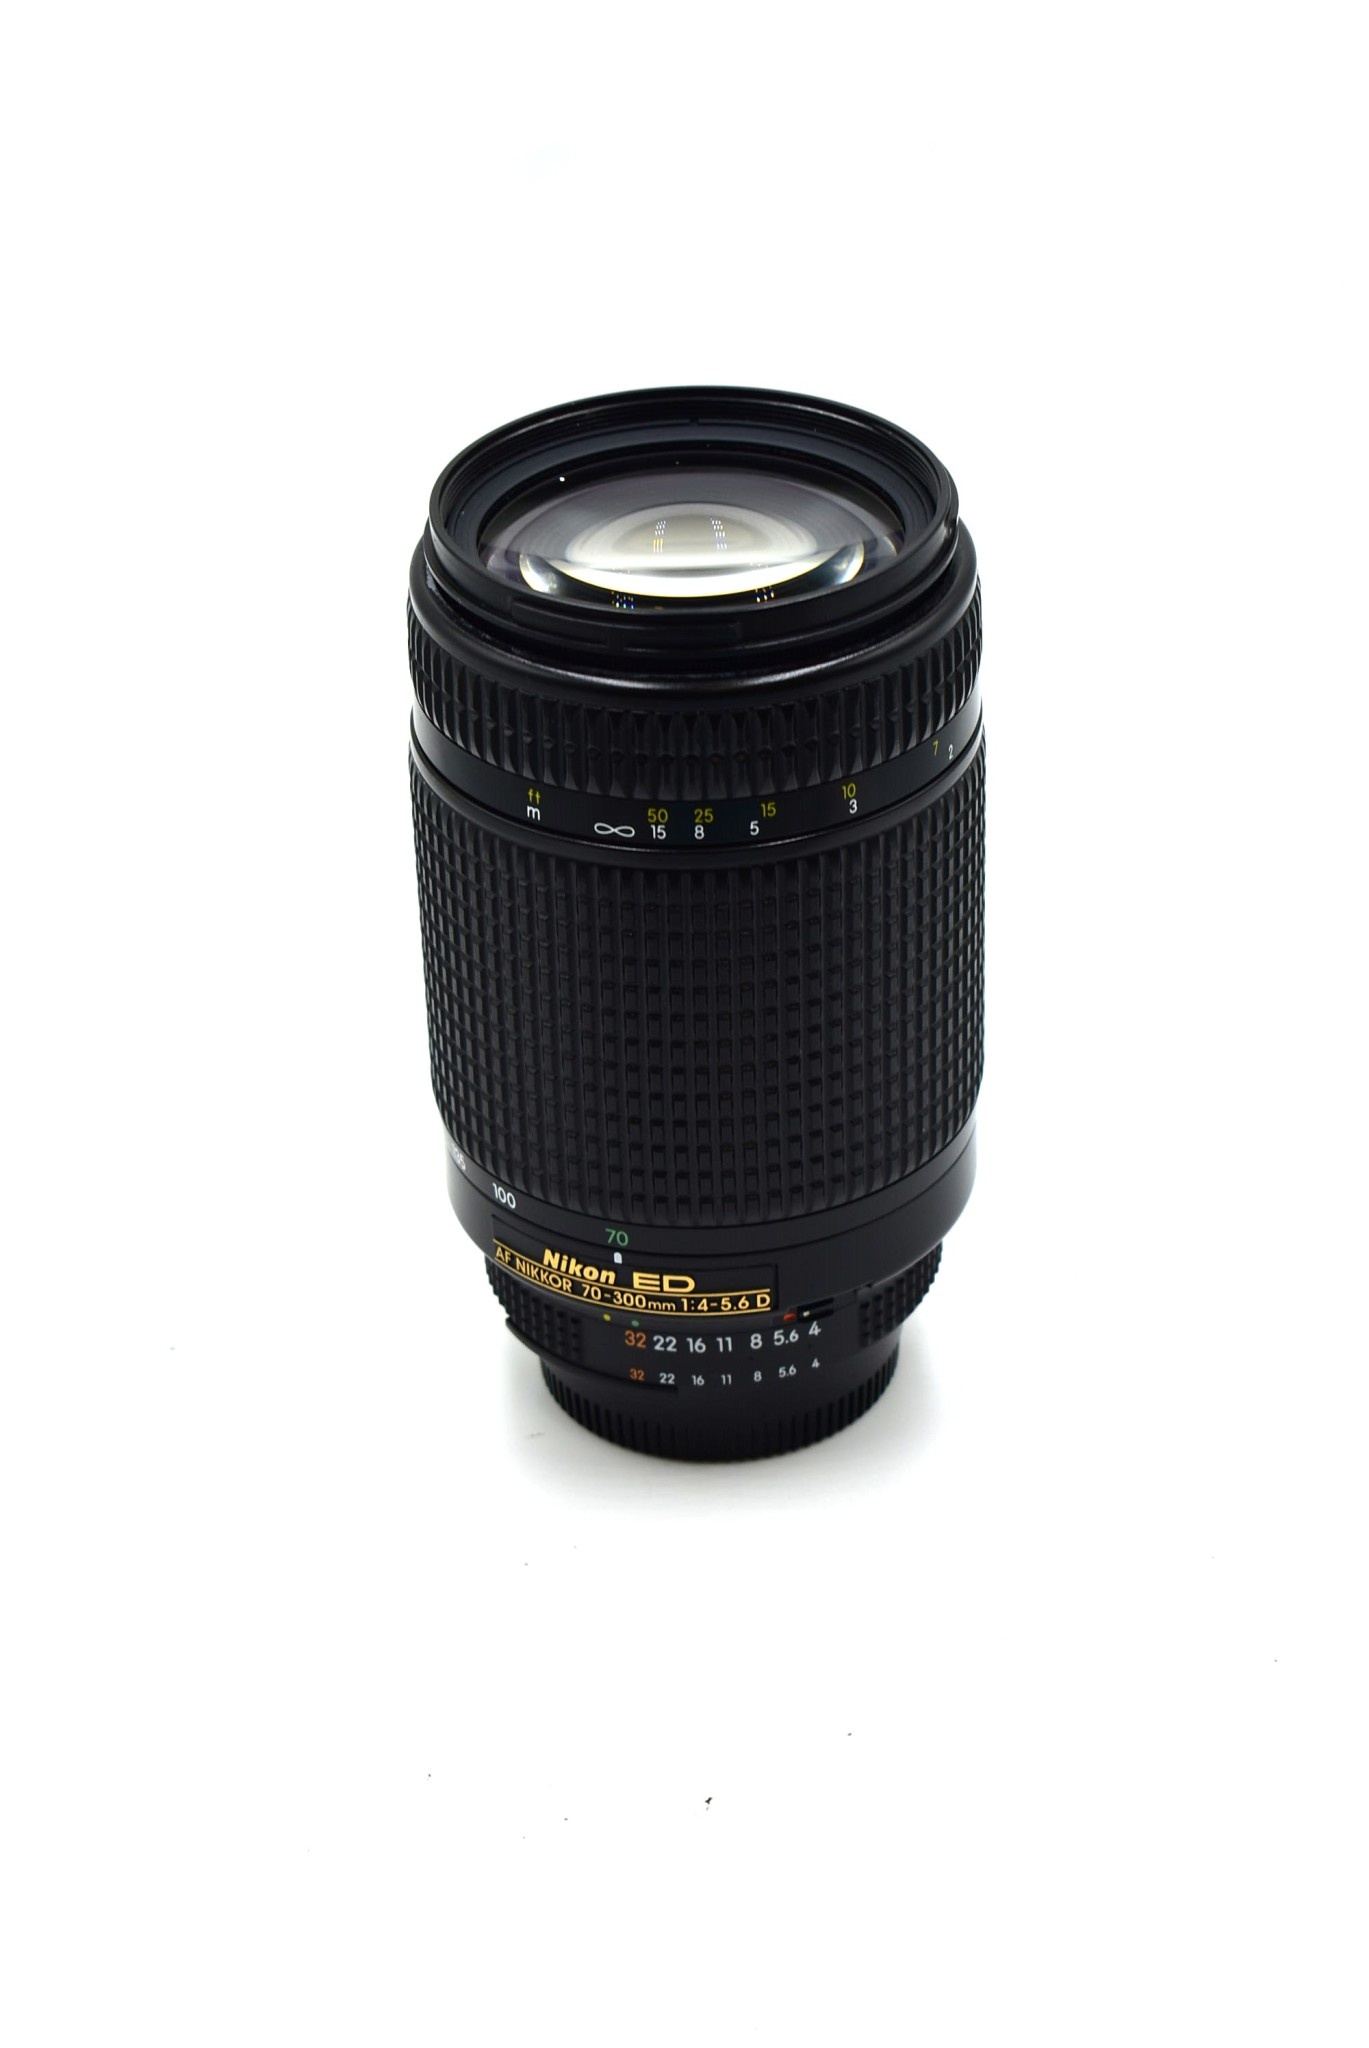 レンズ(ズーム)Nikon ED AF NIKKOR 70-300mm 4-5.6D フード付 - レンズ 